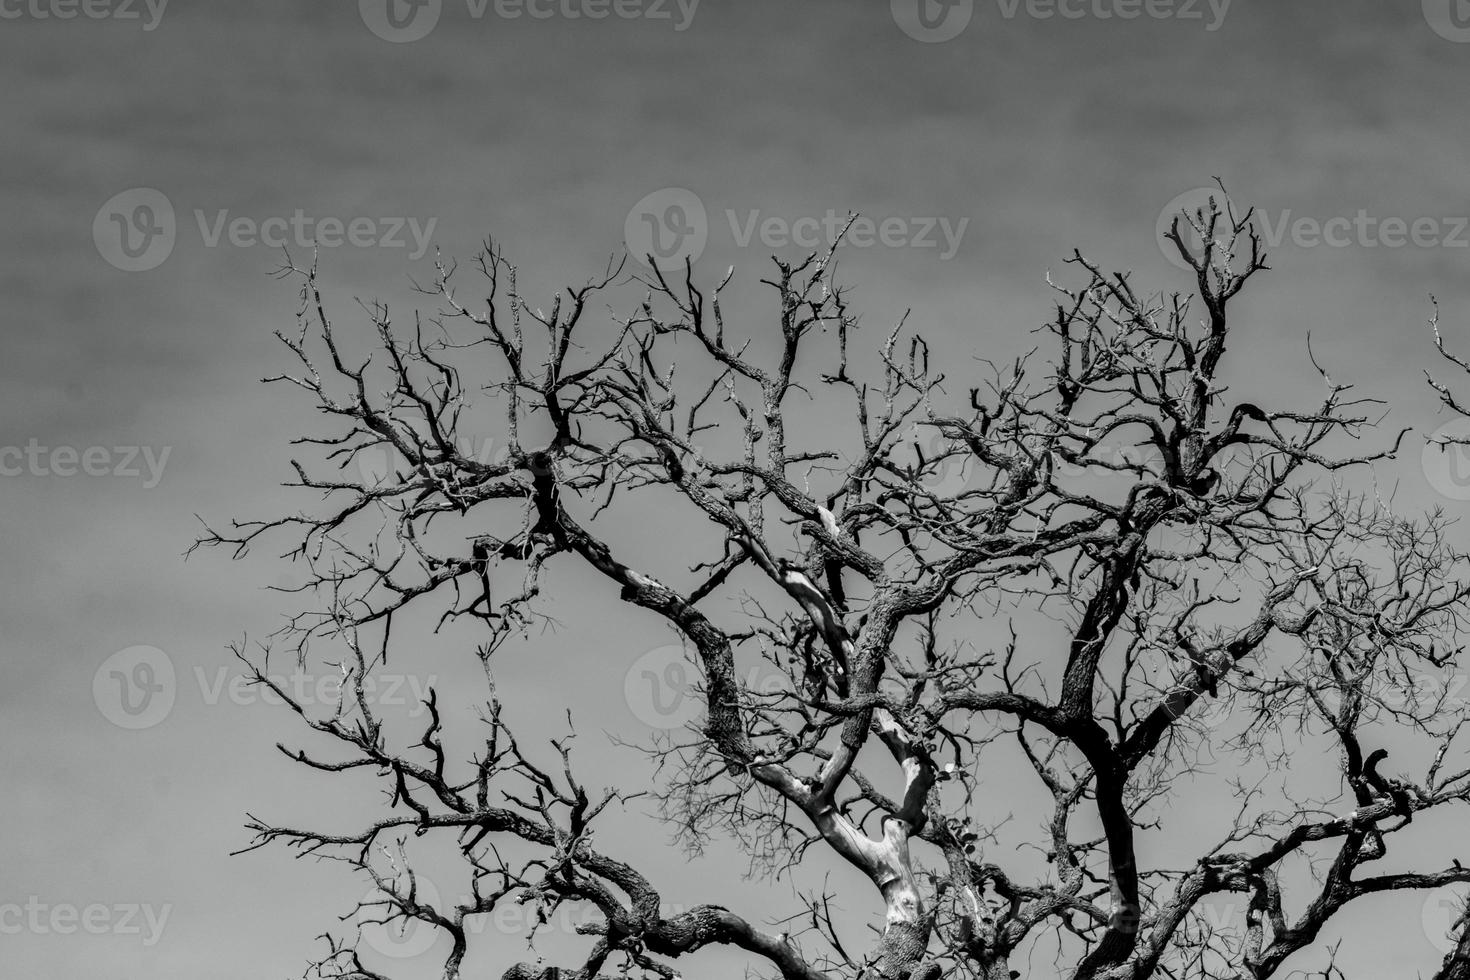 kunst foto van dode boom met takken. dood, verdrietig, klaagzang, hopeloos en wanhoop achtergrond. droogte van de wereld als gevolg van de opwarming van de aarde. natuurlijke dood. zwart-wit foto van dode boom.